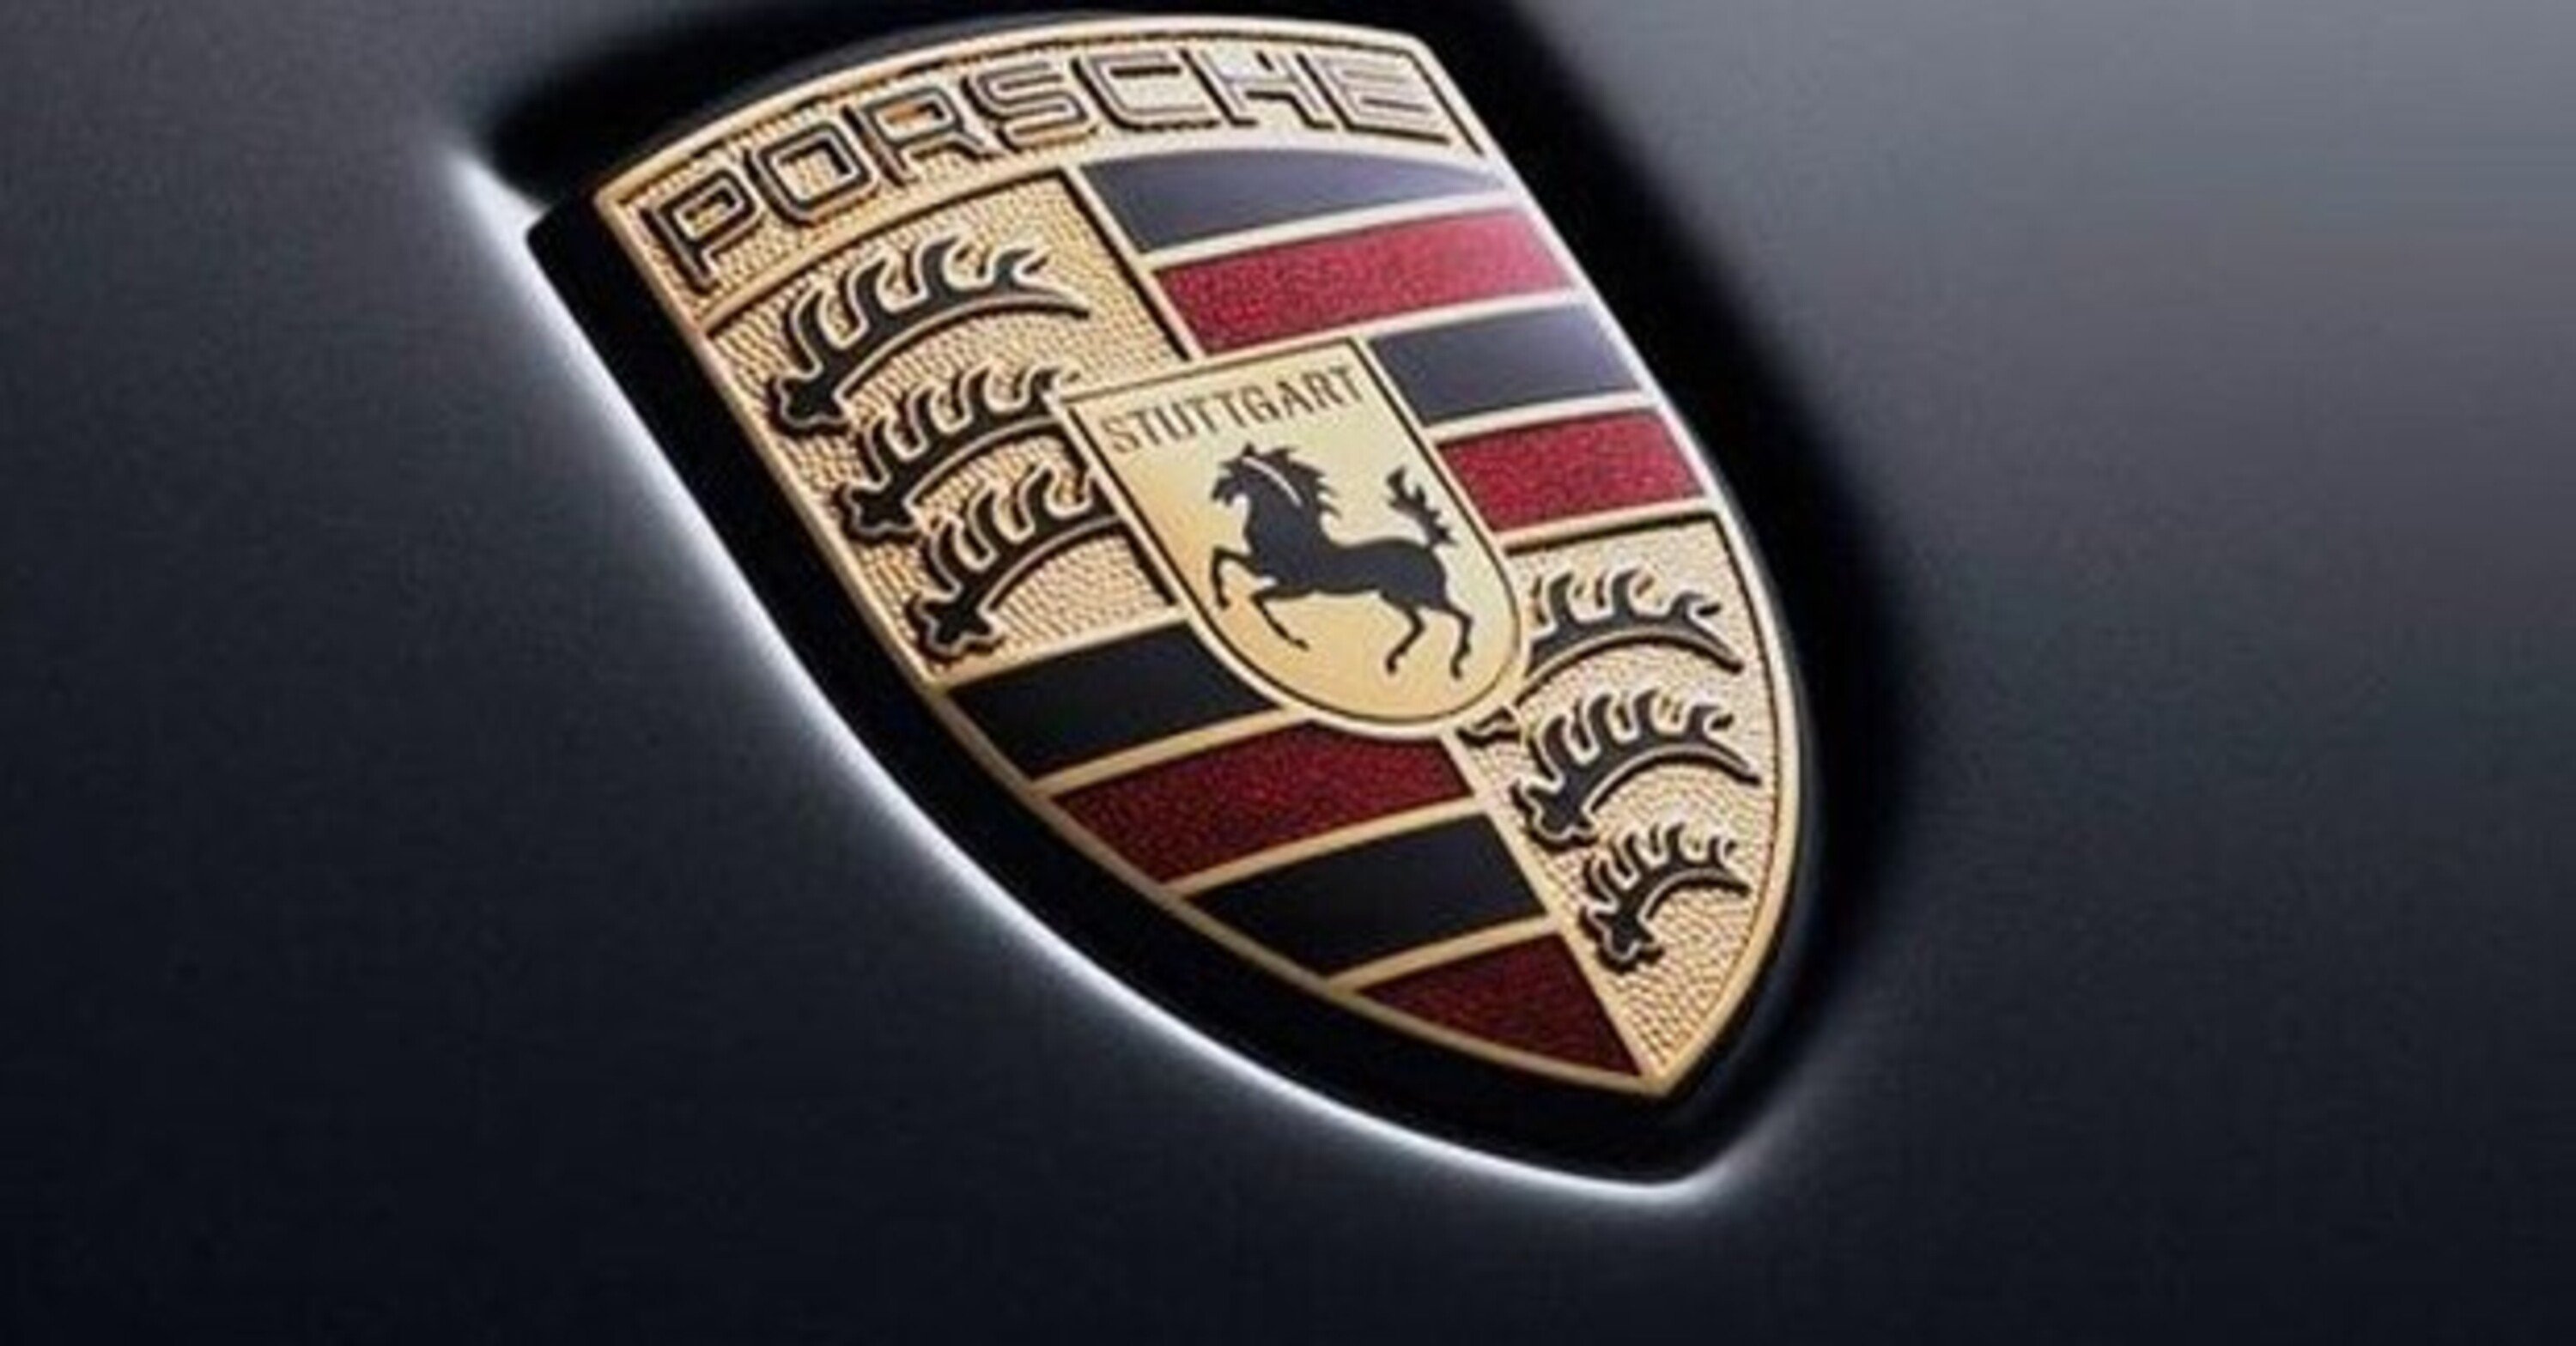 Porsche va in Borsa a Francoforte: offerta pubblica del 25%